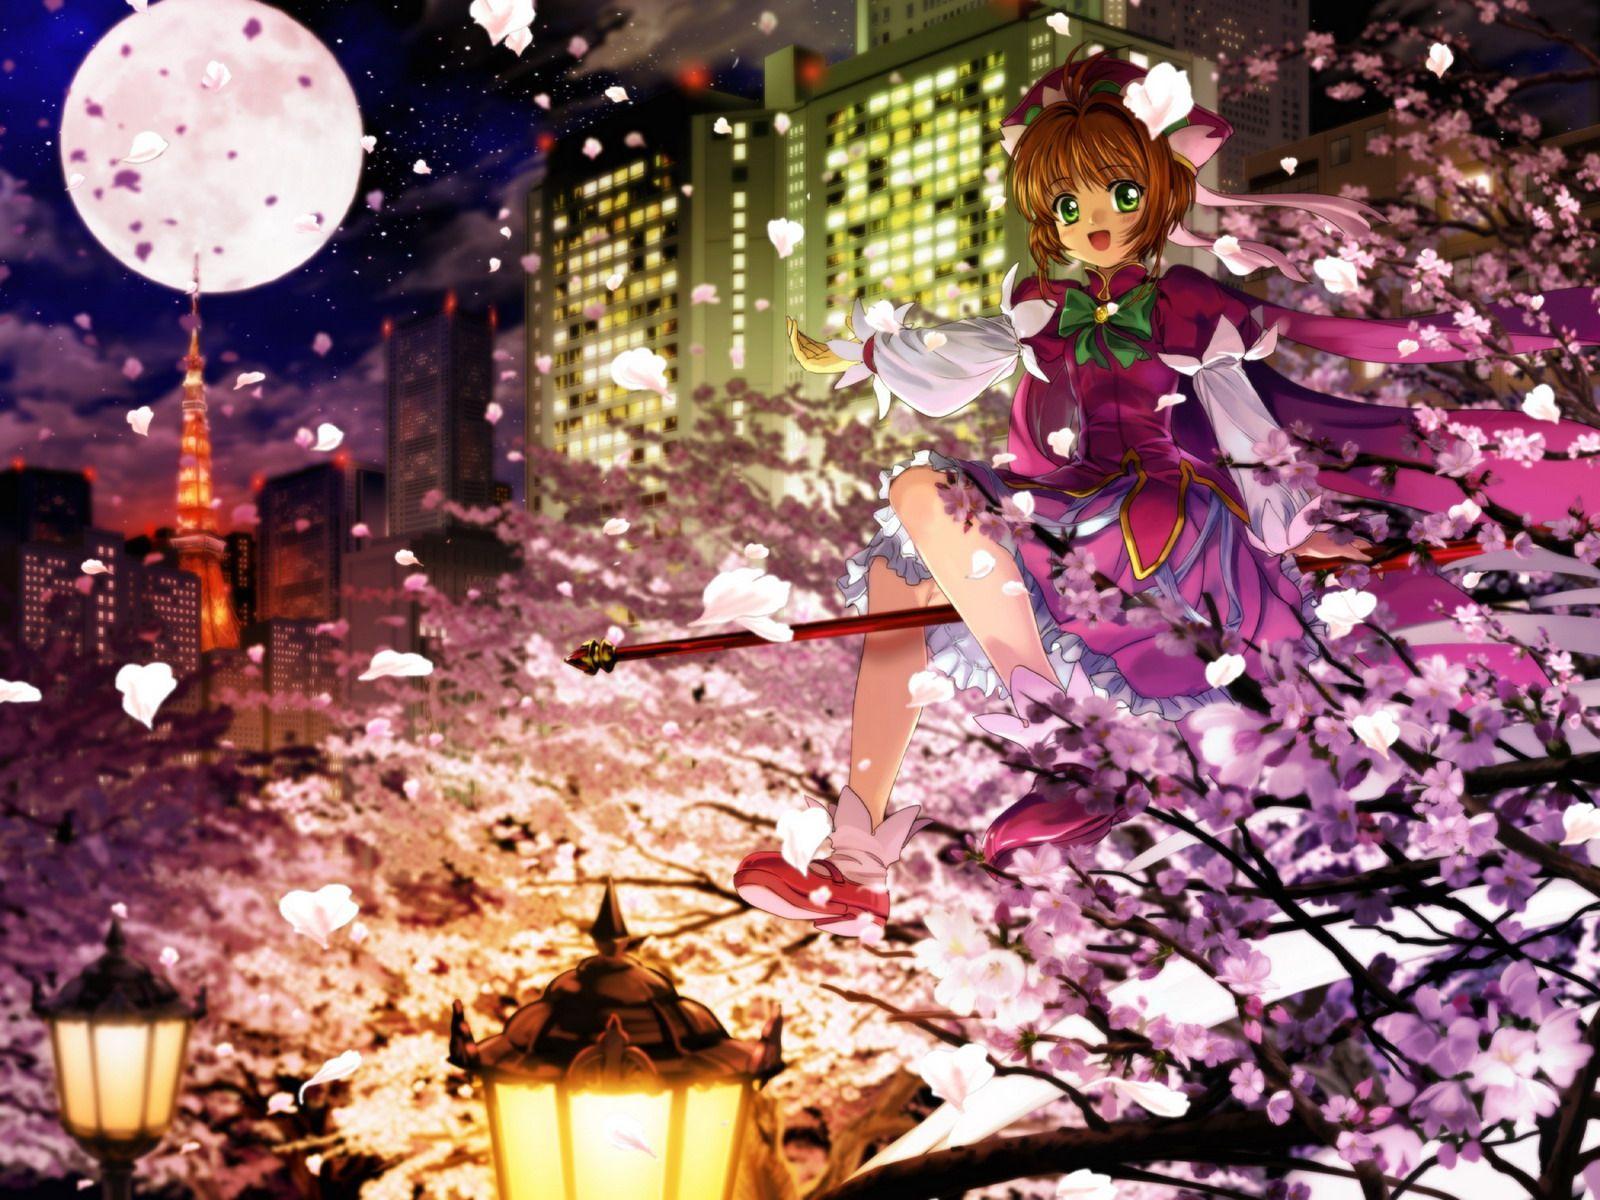 Card Captor Sakura Anime